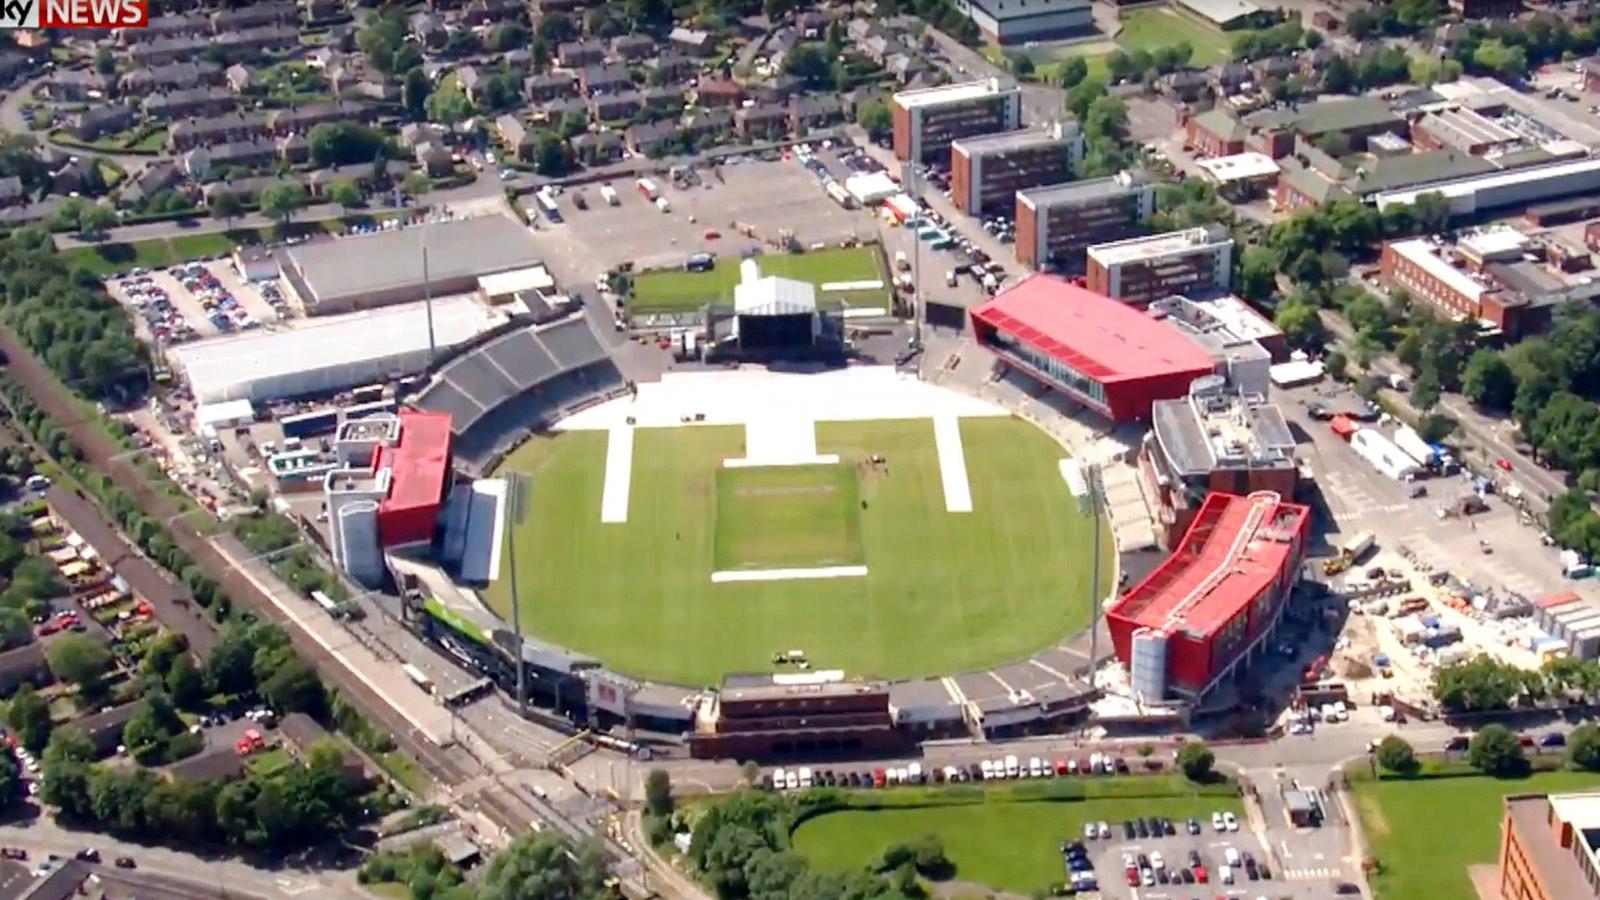 Old Trafford cricket ground, där kvällens konsert hålls.